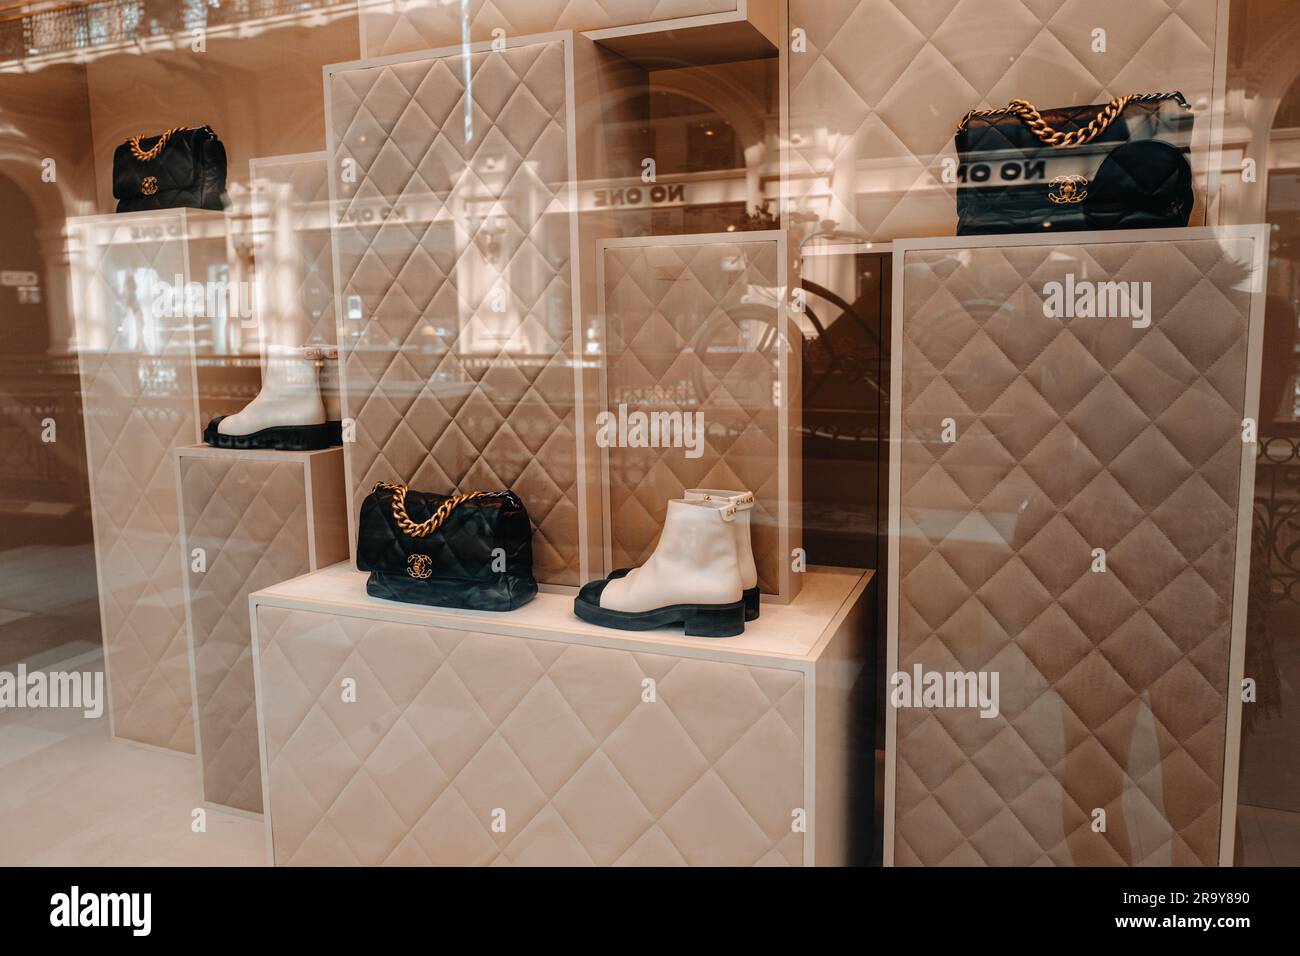 Meuble beige neutre Chanel avec sac à main noir et chaussures blanches dans la fenêtre d'un magasin de luxe Chanel est une marque de haute couture fondée par Coco Chanel in Banque D'Images